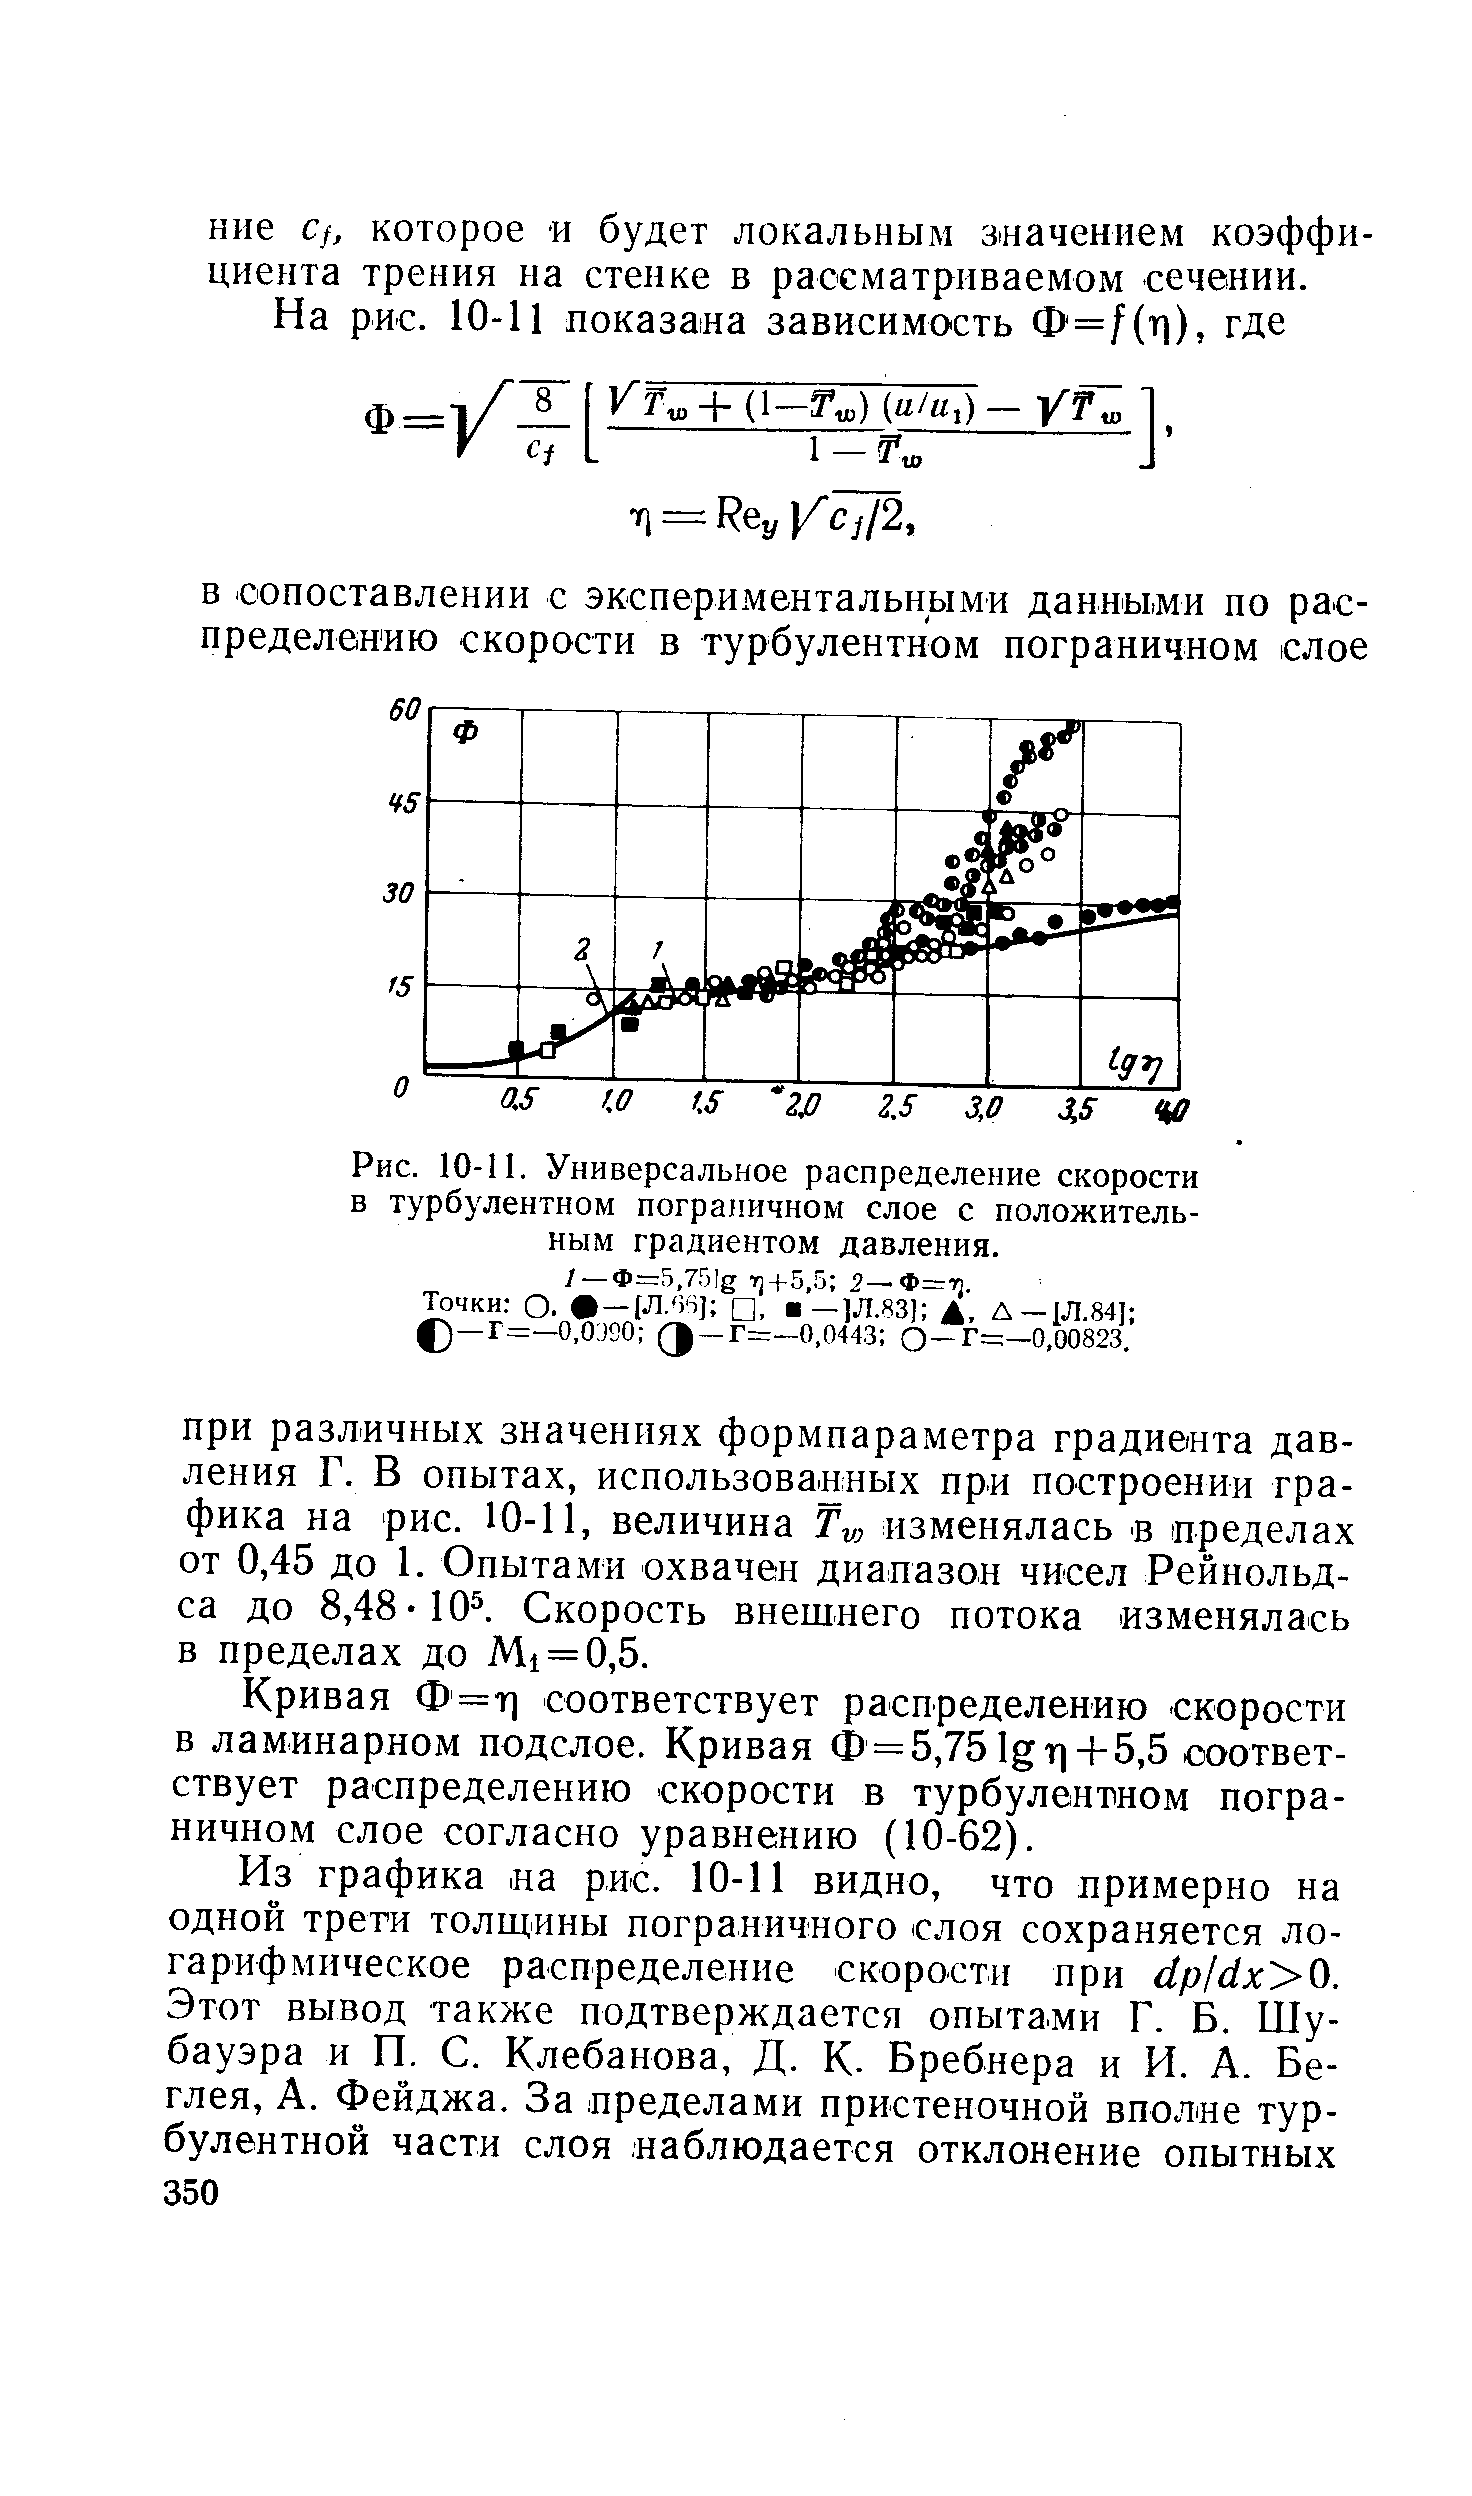 Рис. 10-11. Универсальное распределение скорости в <a href="/info/19796">турбулентном пограничном слое</a> с положительным градиентом давления.
